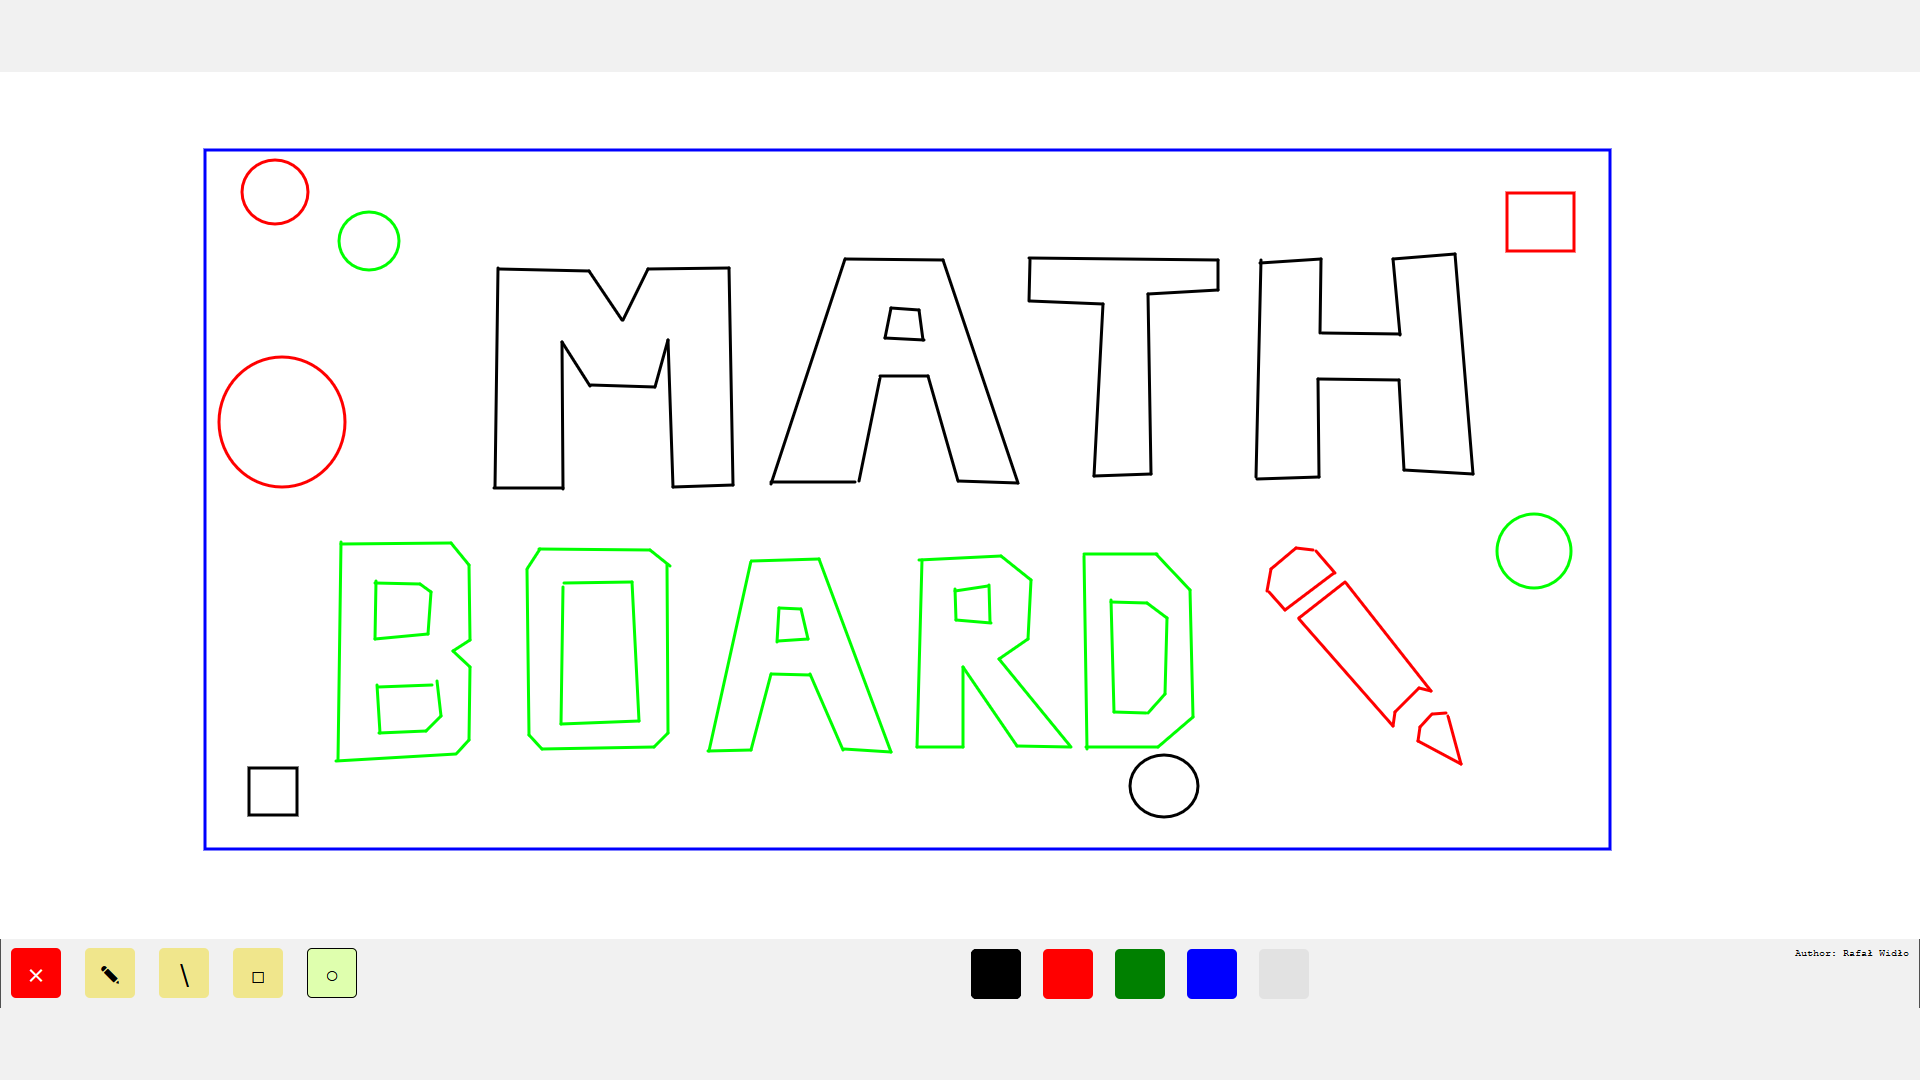 Math board image